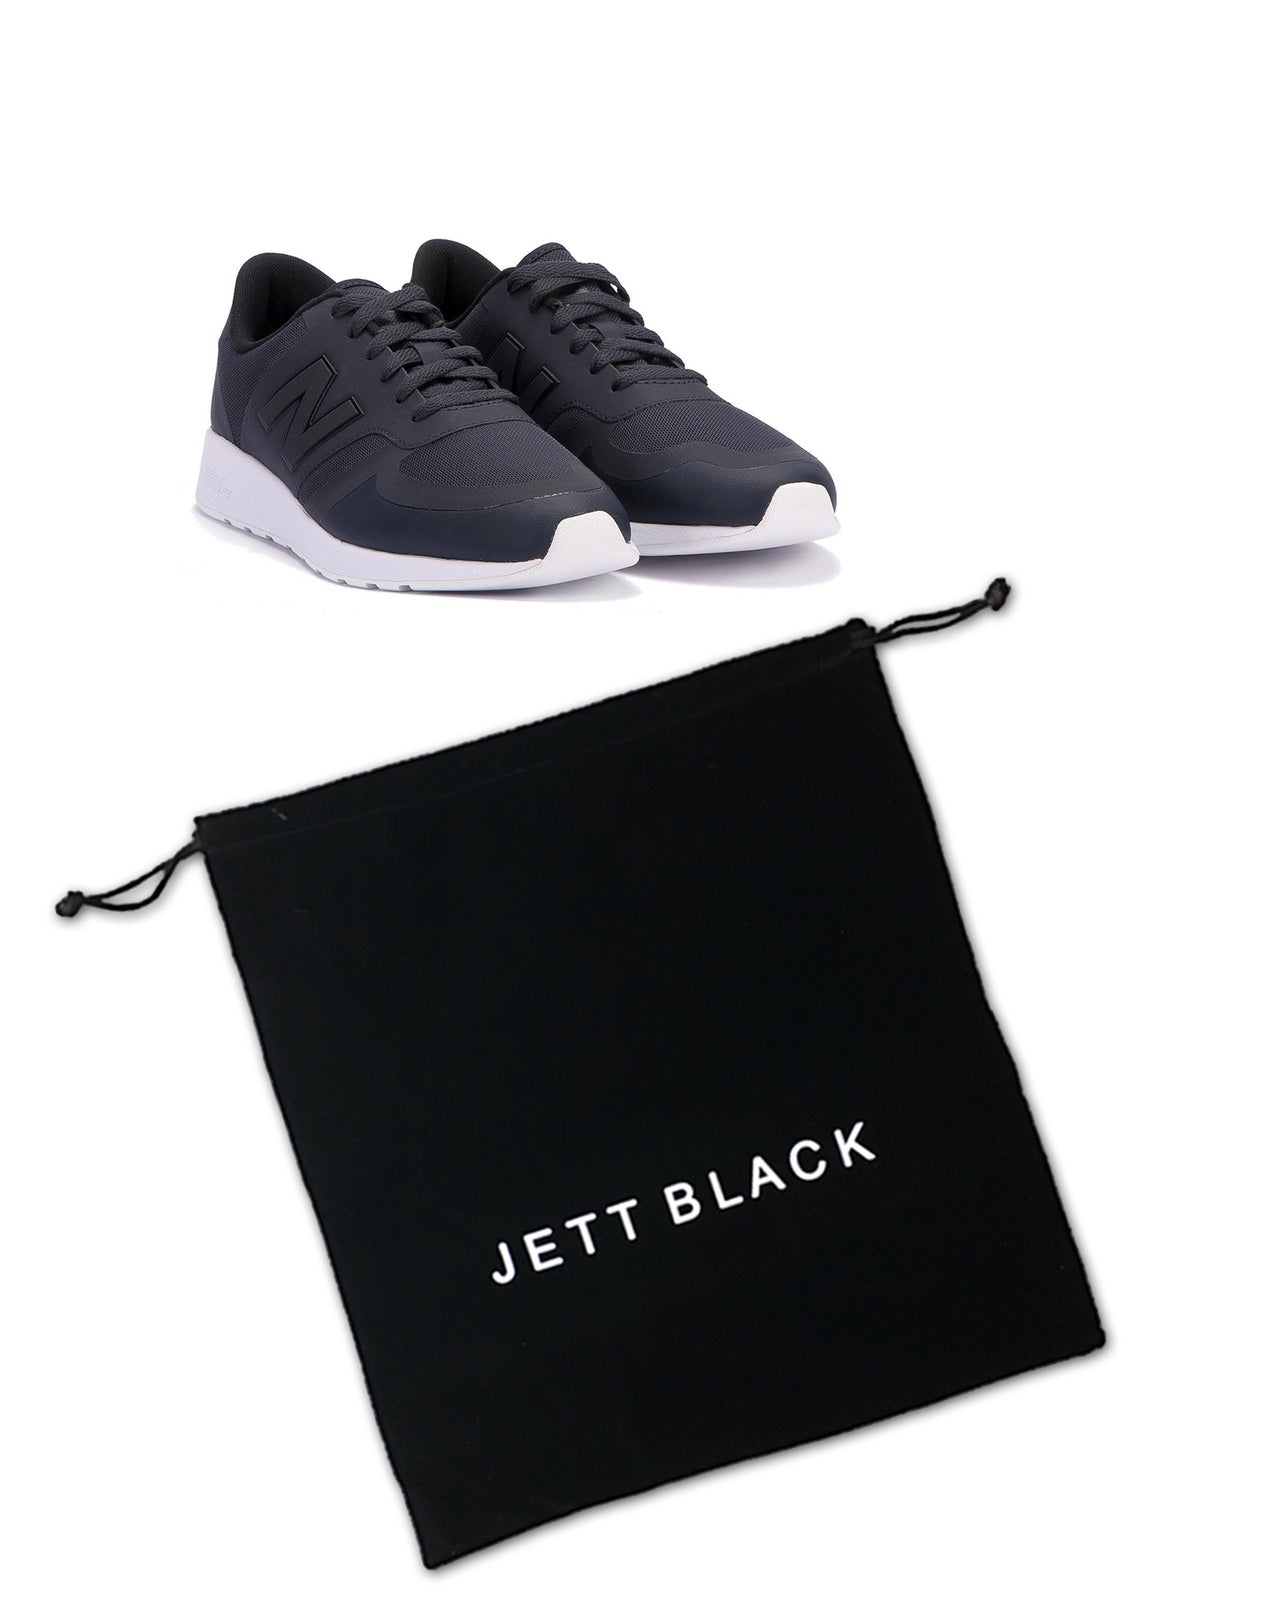 Jett Black Shoe Pouch - 2 Pack